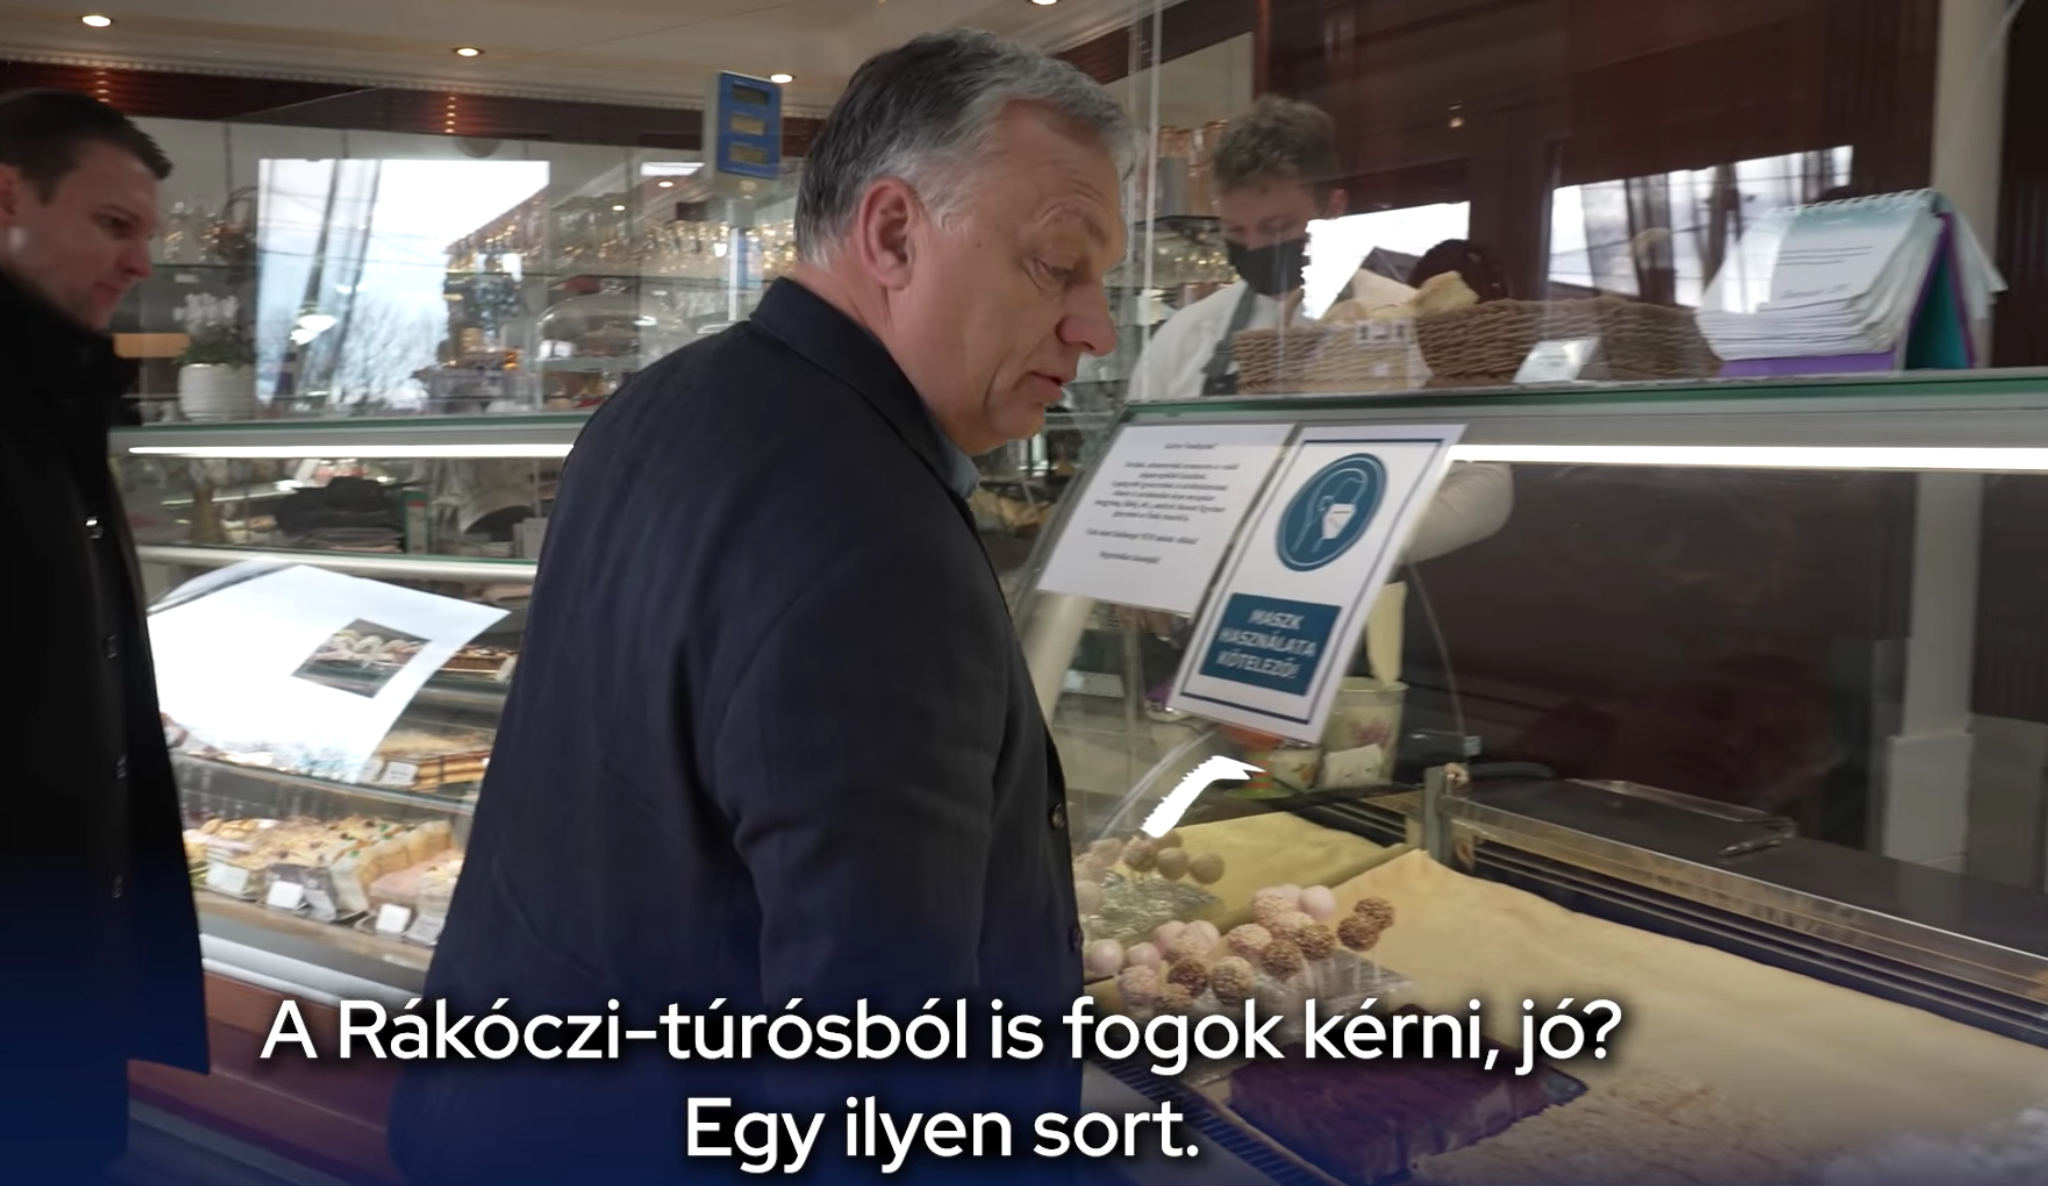 Orbán Viktor maszk nélkül kért elvitelre két puncsminyont a tábla előtt, amire azt írták: Maszk használata kötelező!